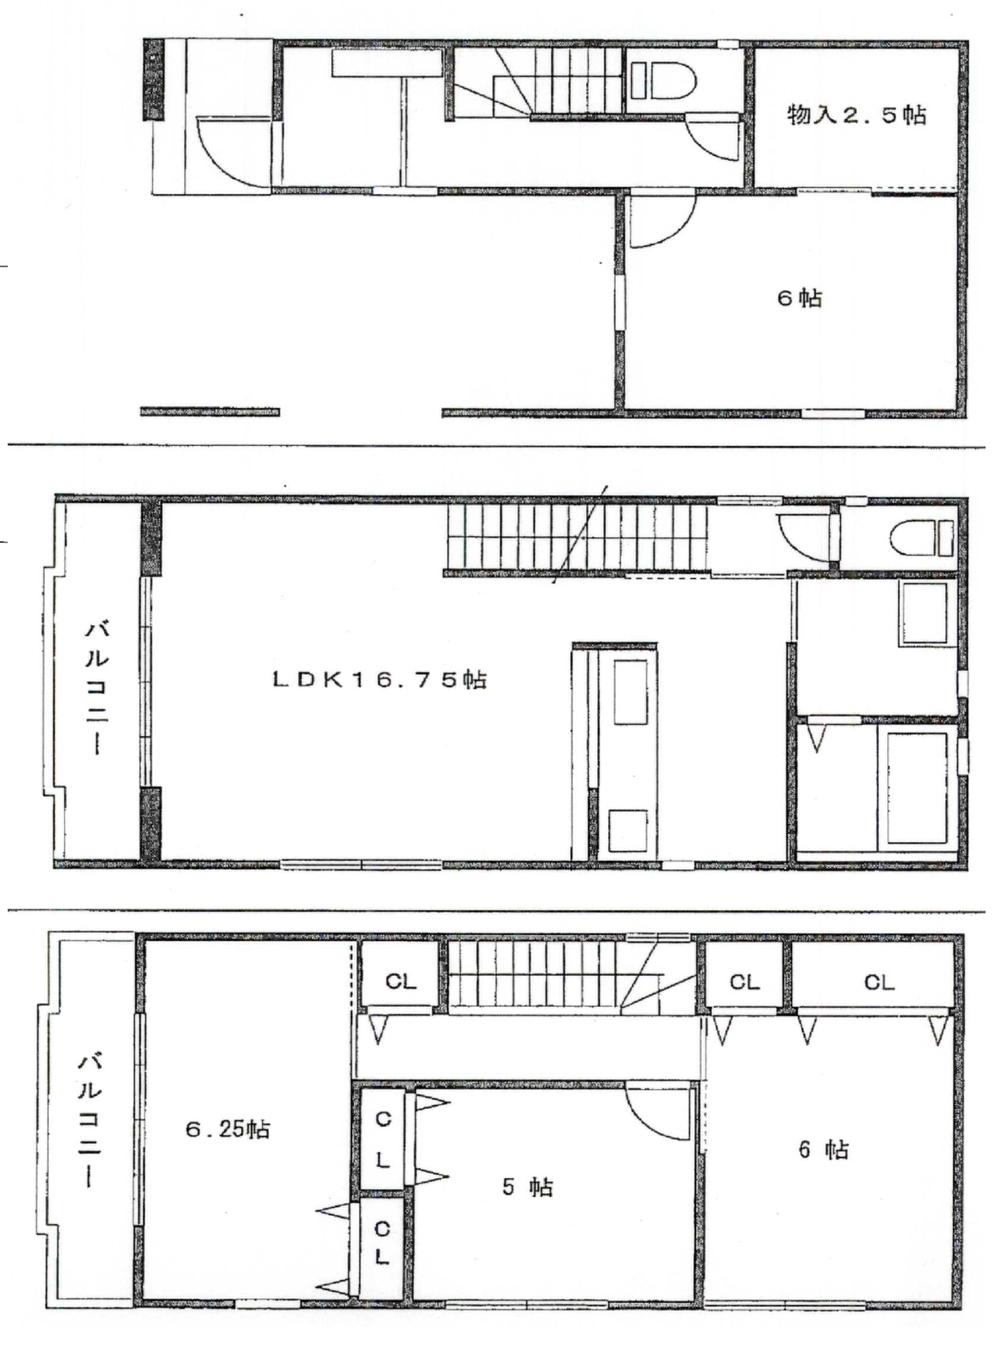 Floor plan. 29,800,000 yen, 4LDK, Land area 61.29 sq m , Building area 99.62 sq m floor plan